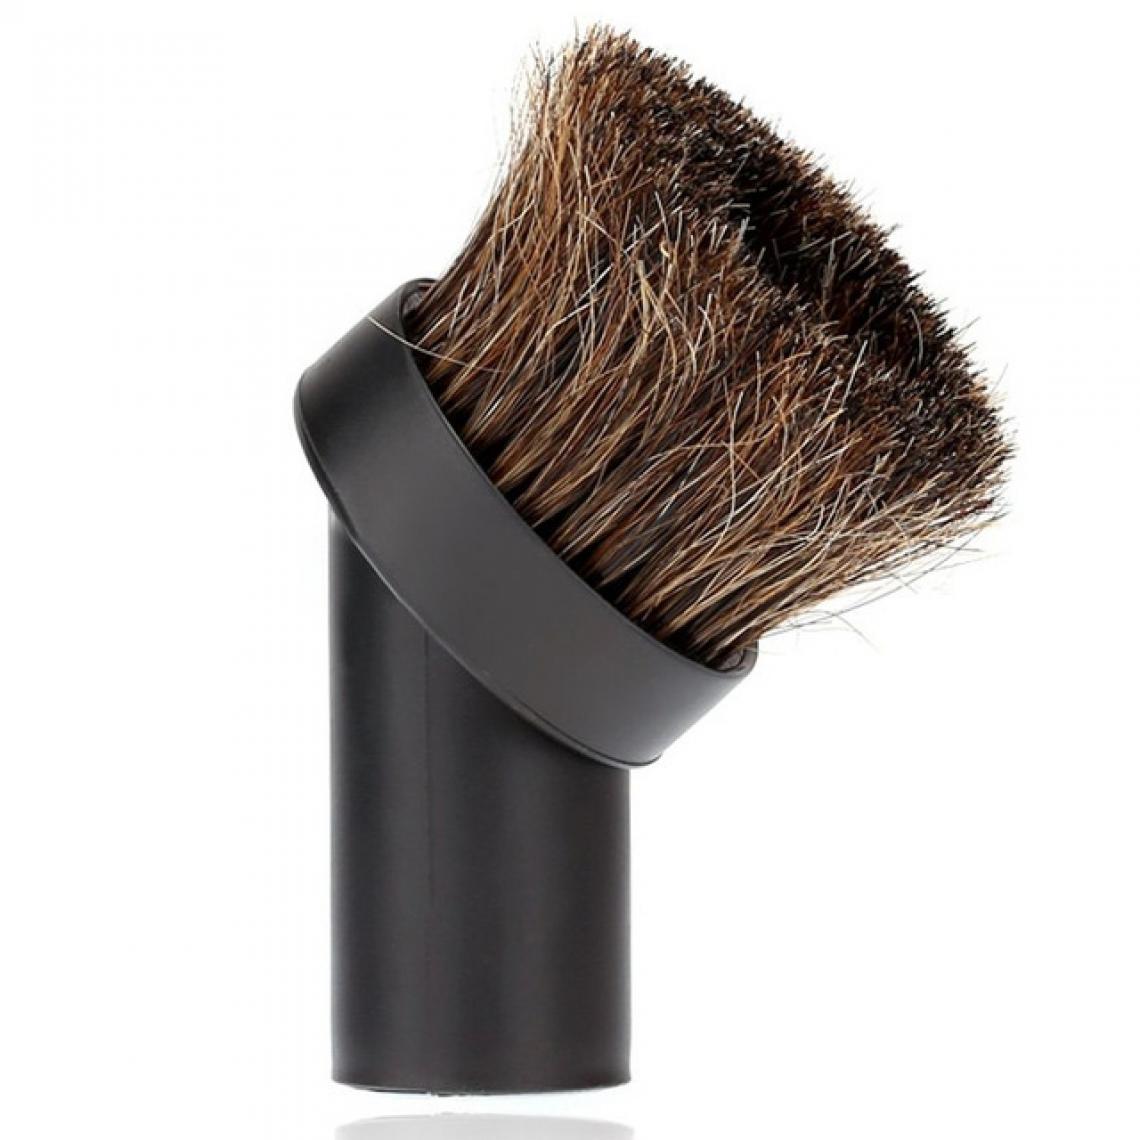 Wewoo - Tête de brosse pour aspirateur 32mm Usage domestique Mixte Cheval Cheveux Ovale nettoyage pour Accessoires Outil (Noir) - Box domotique et passerelle